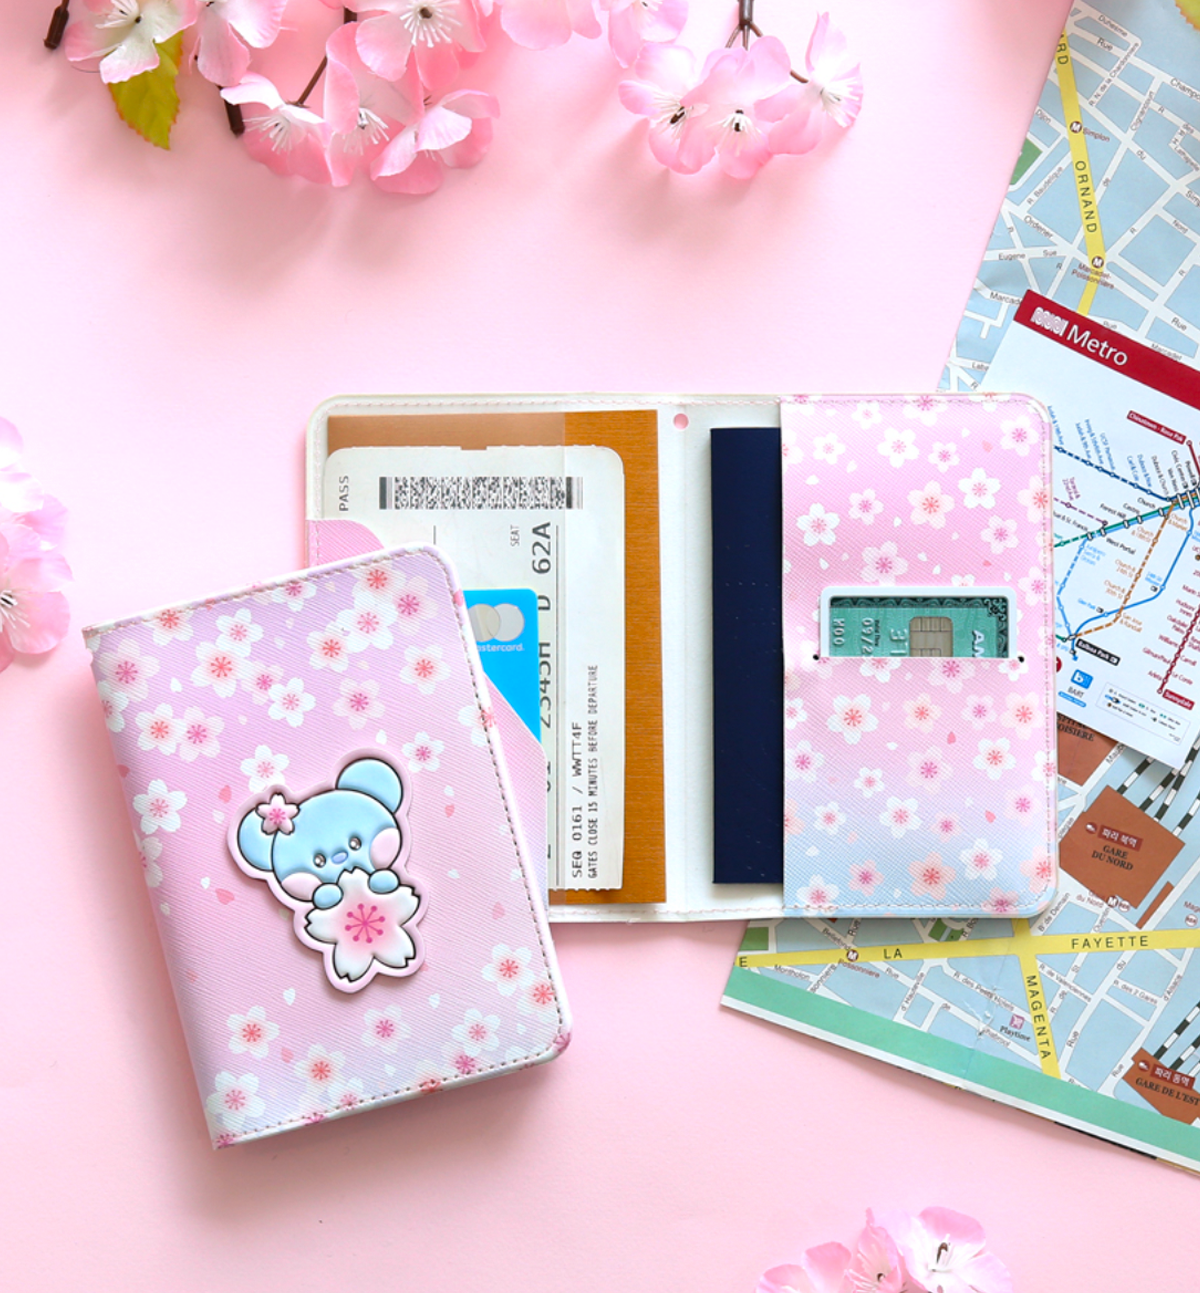 BT21 Cherry Blossom Passport Cover [Tata]